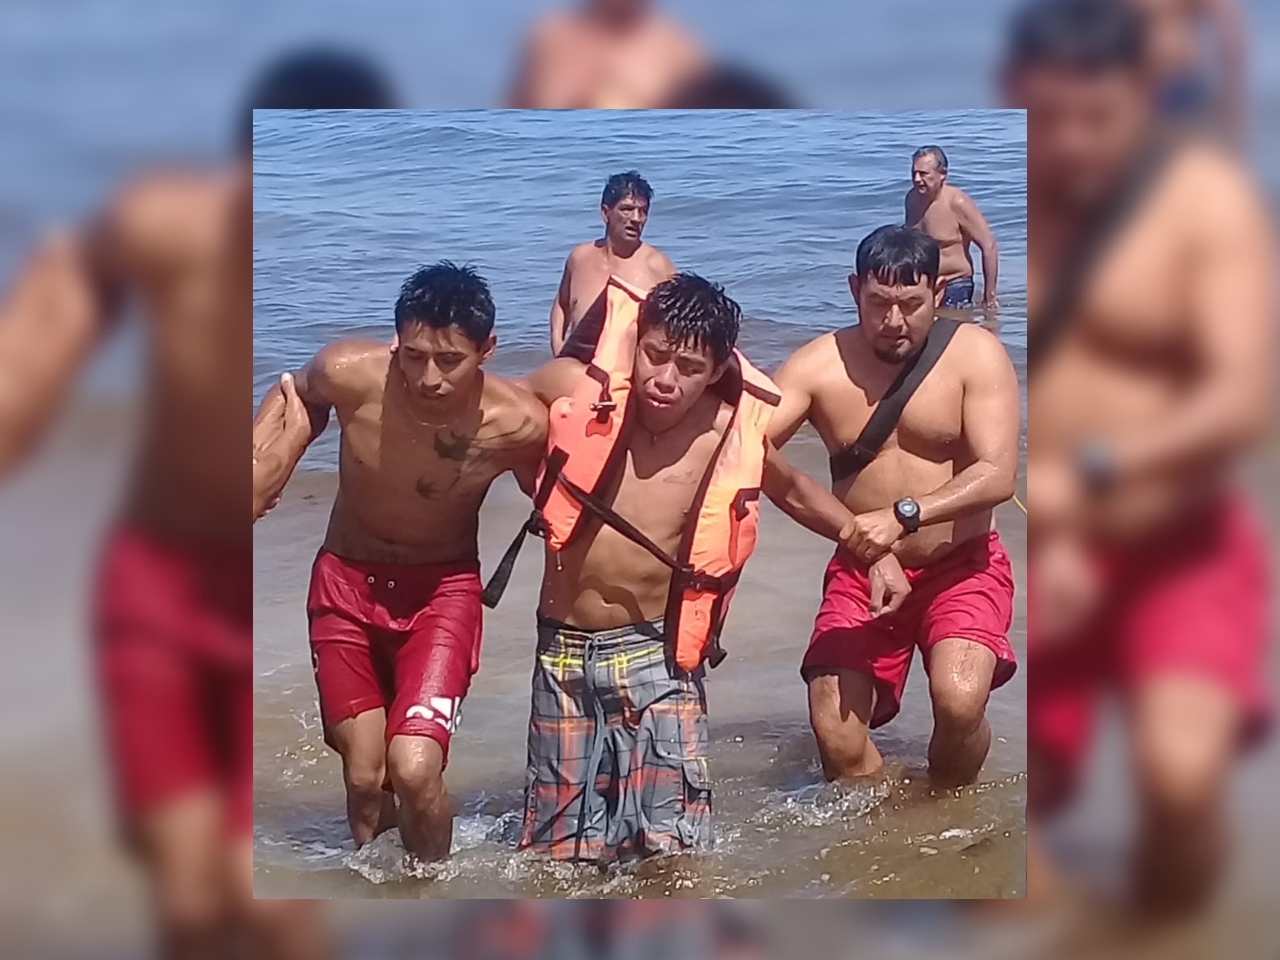 Uno de los turistas nacionales tuvo problemas para respirar luego de ser sacado del agua por guardavidas, por lo que fue revisado por paramédicos en Playa del Carmen